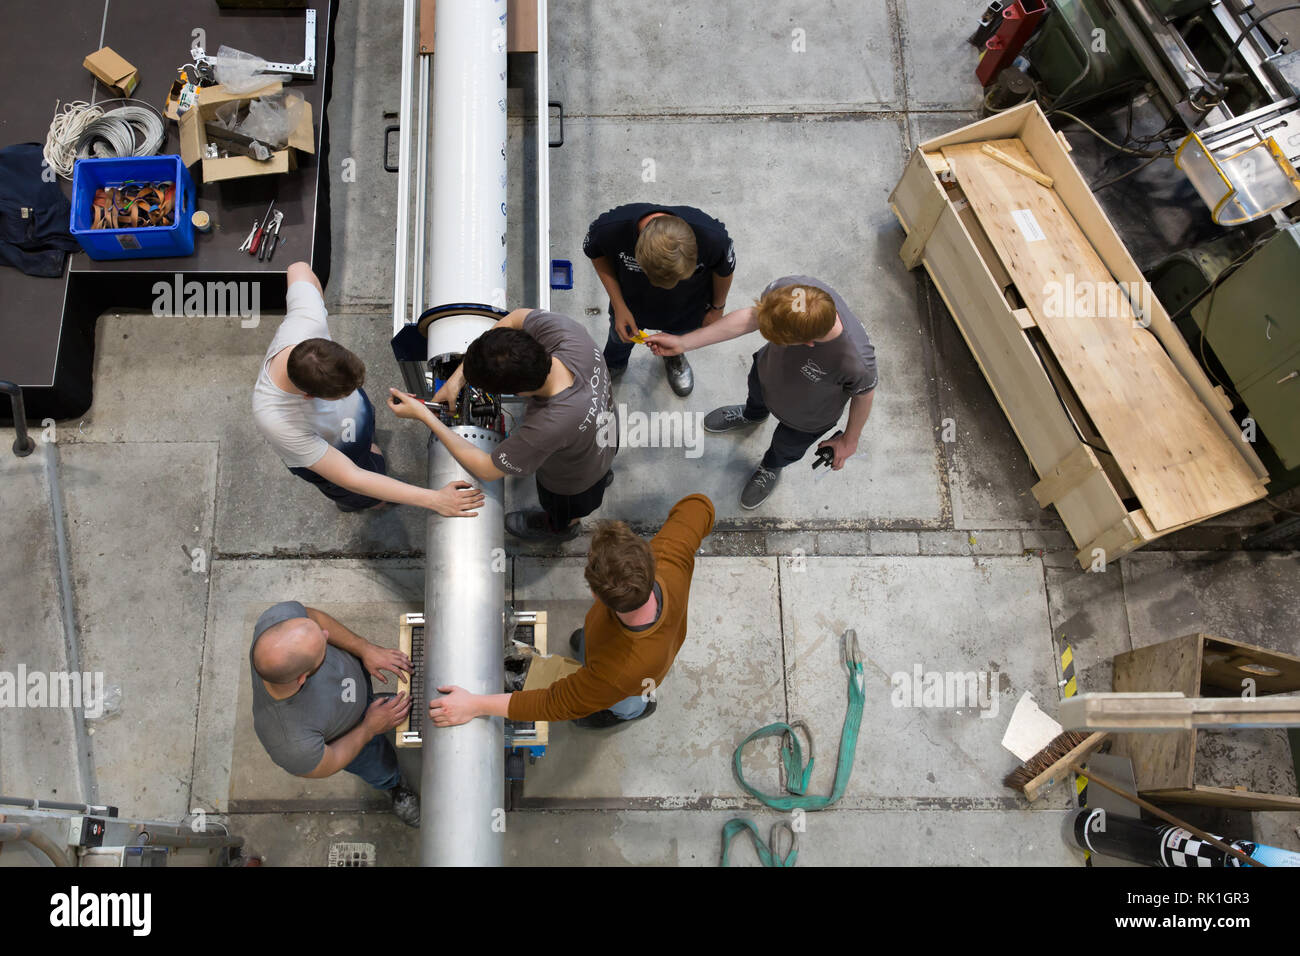 Ingegneria aerospaziale gli studenti dell'Università Tecnica di Delft a lavorare sul loro razzo, la Stratos III Foto Stock